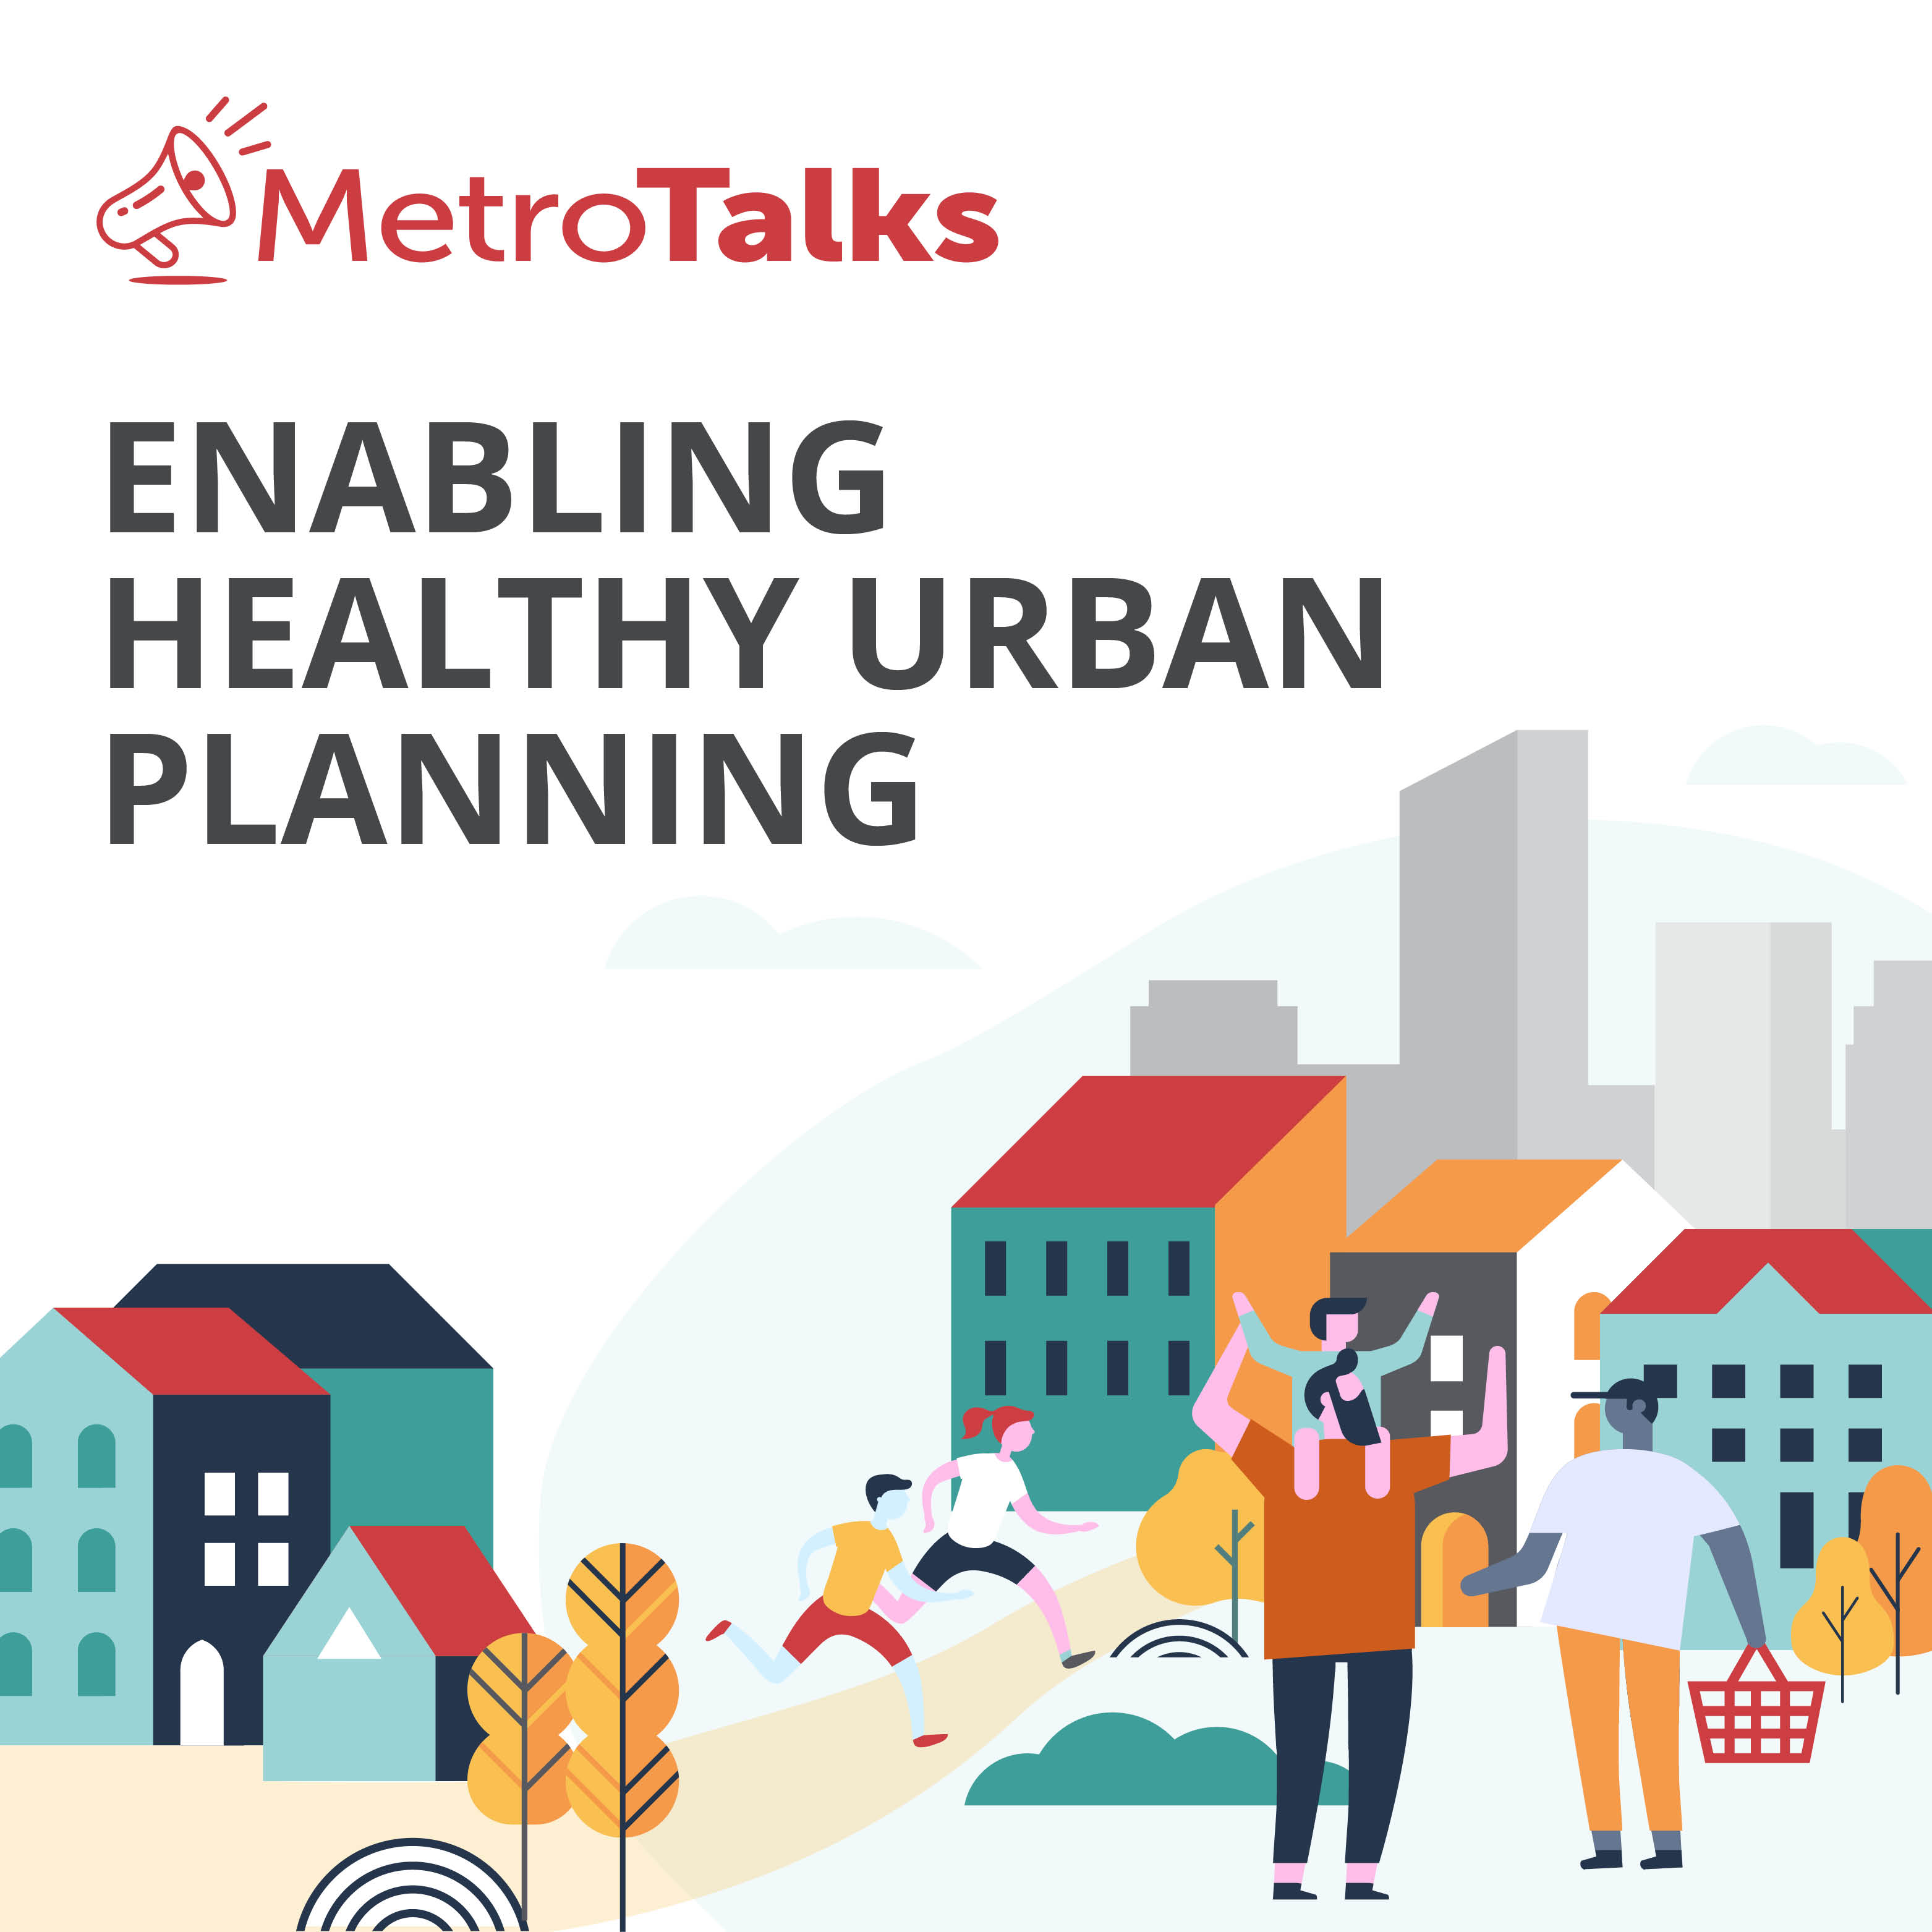  MetroTalks: Enabling healthy urban planning